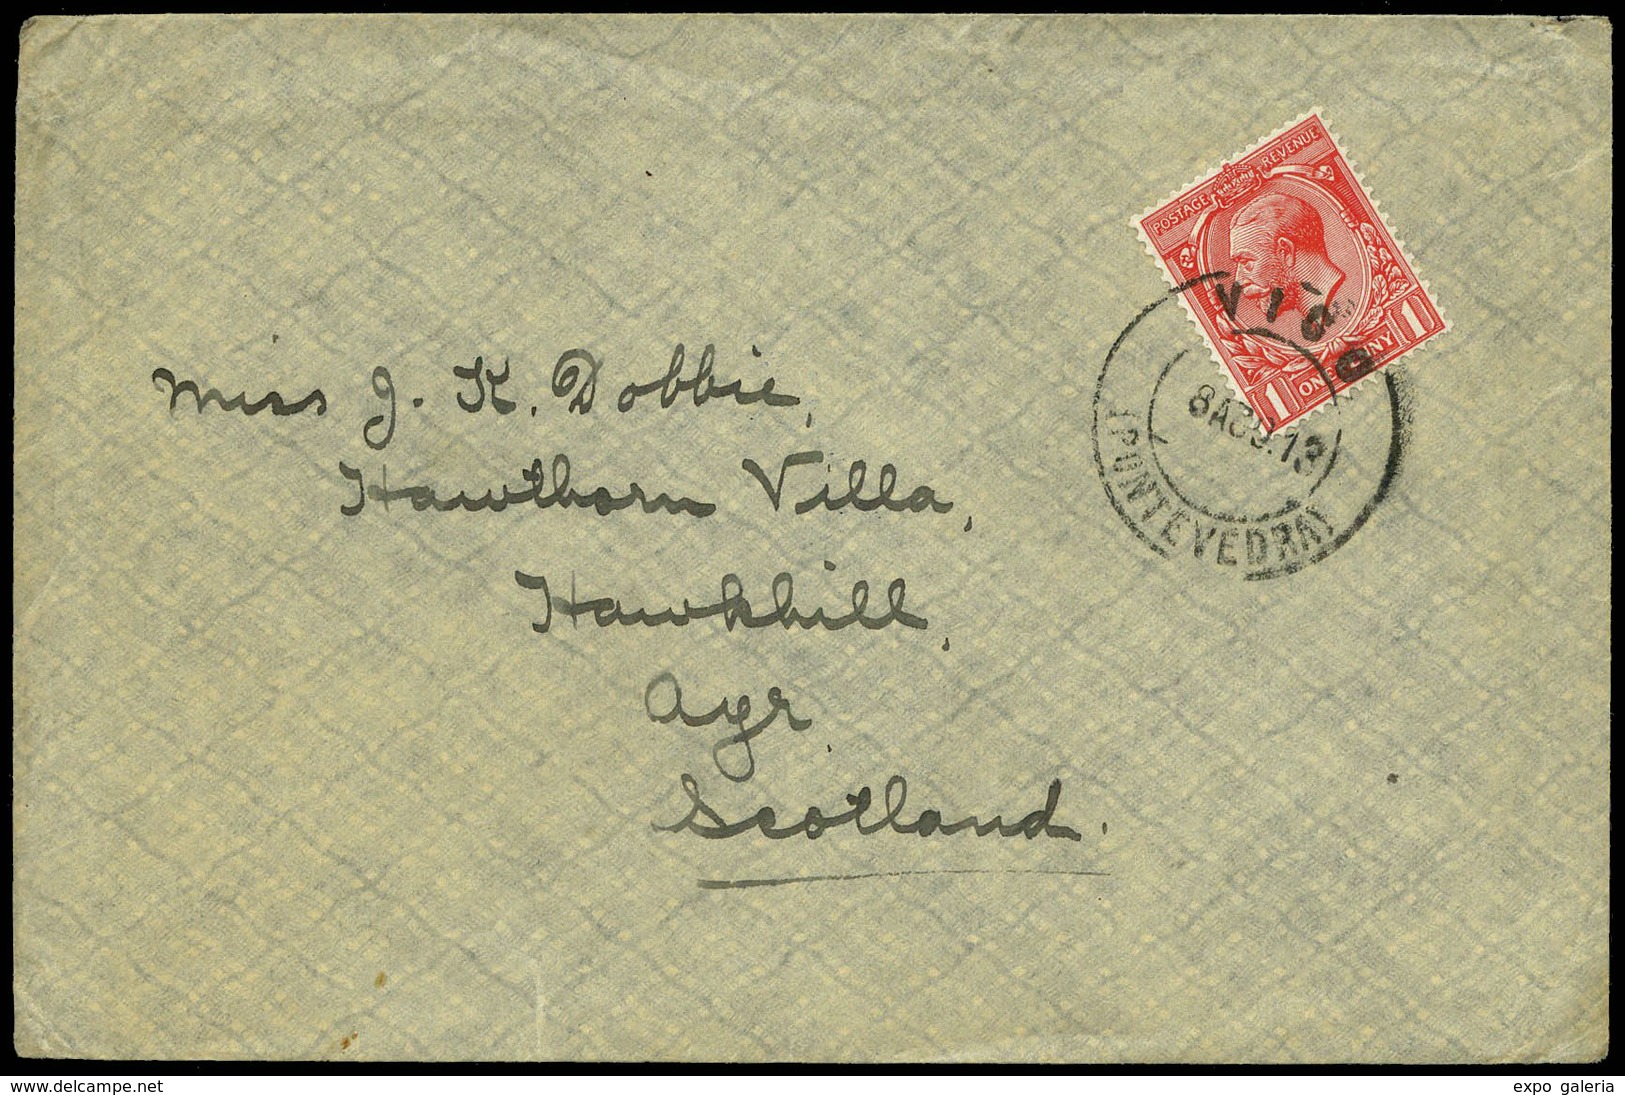 Sello Inglés 1913. Carta Cda A Escocia Con Fechador “Vigo 8/8/13” Y Remite “The Imperial Merchant. Service Guild” - Neufs